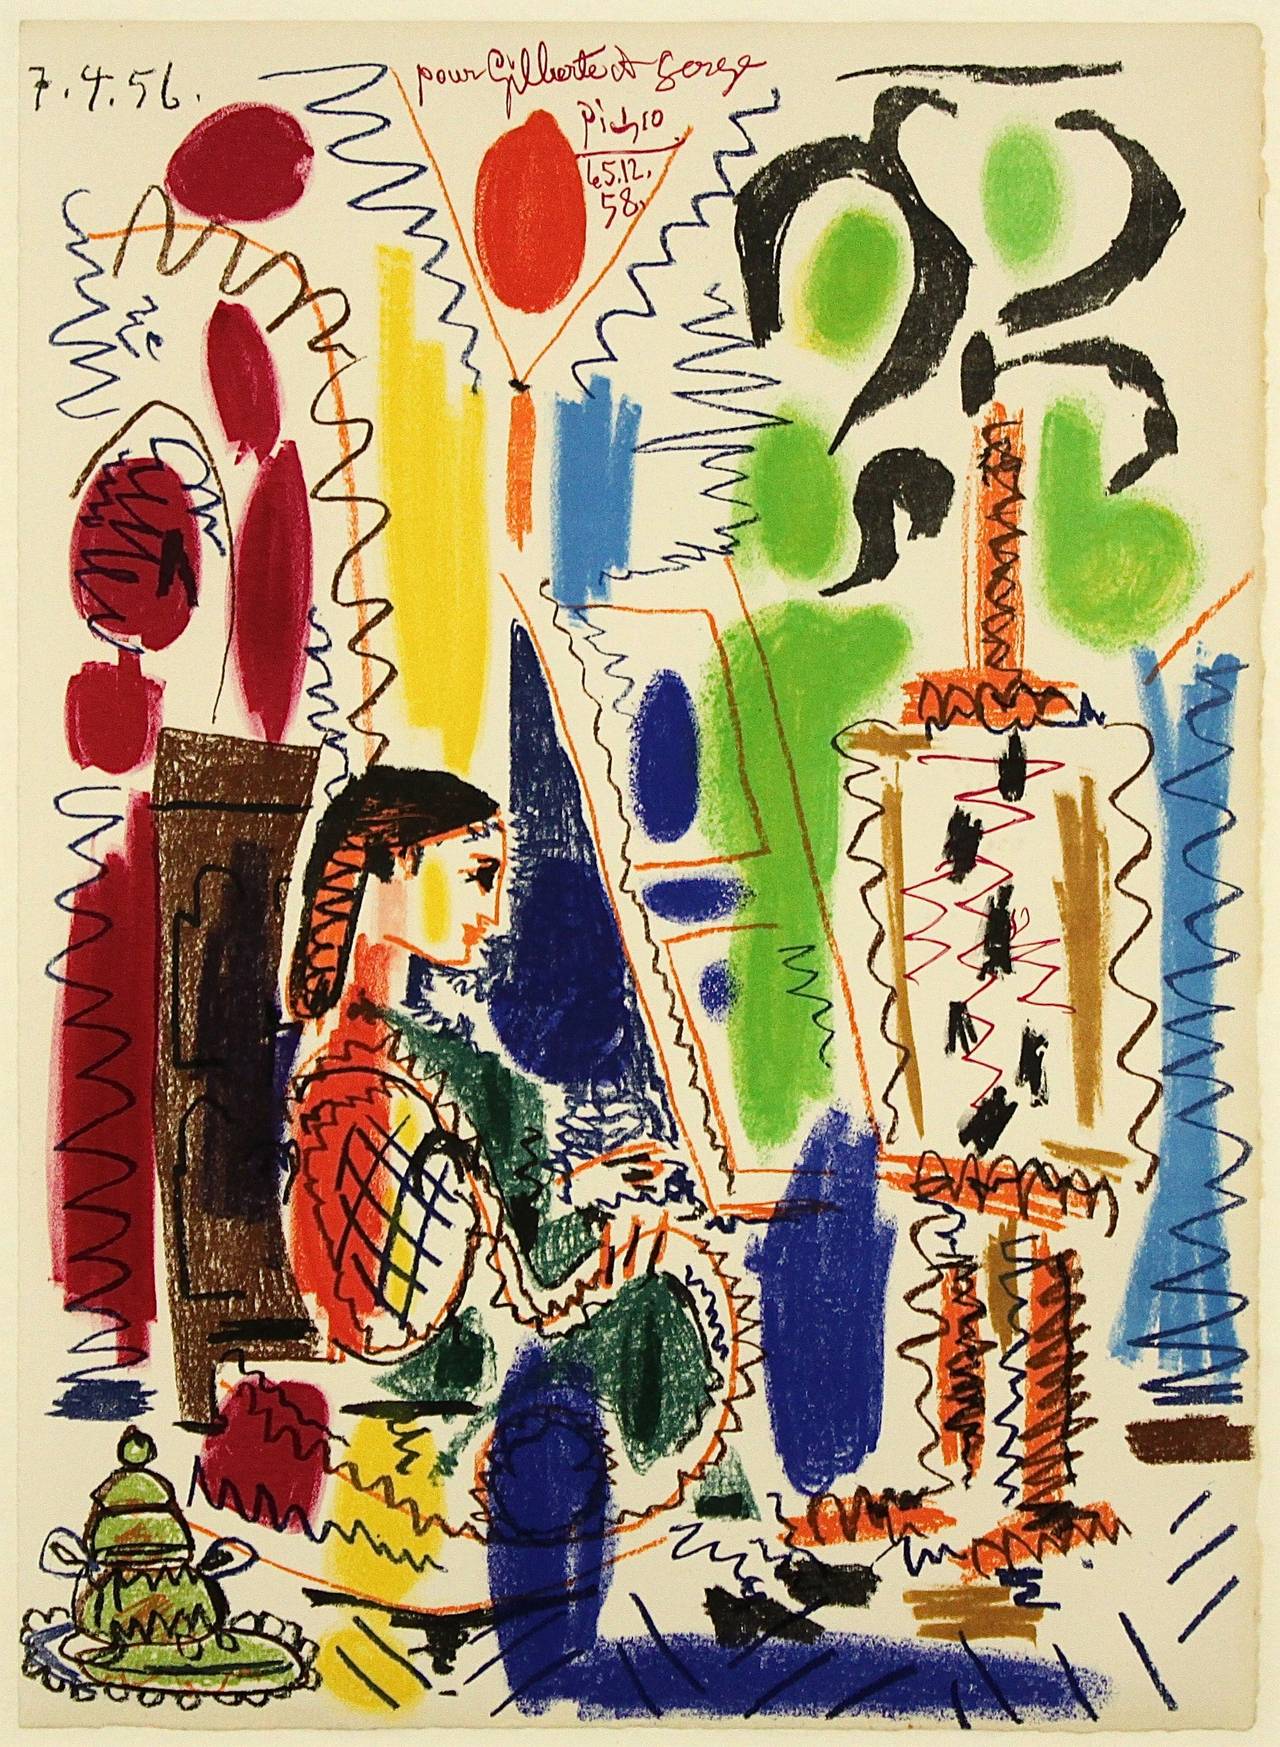 L'Atelier de Cannes - Print by Pablo Picasso